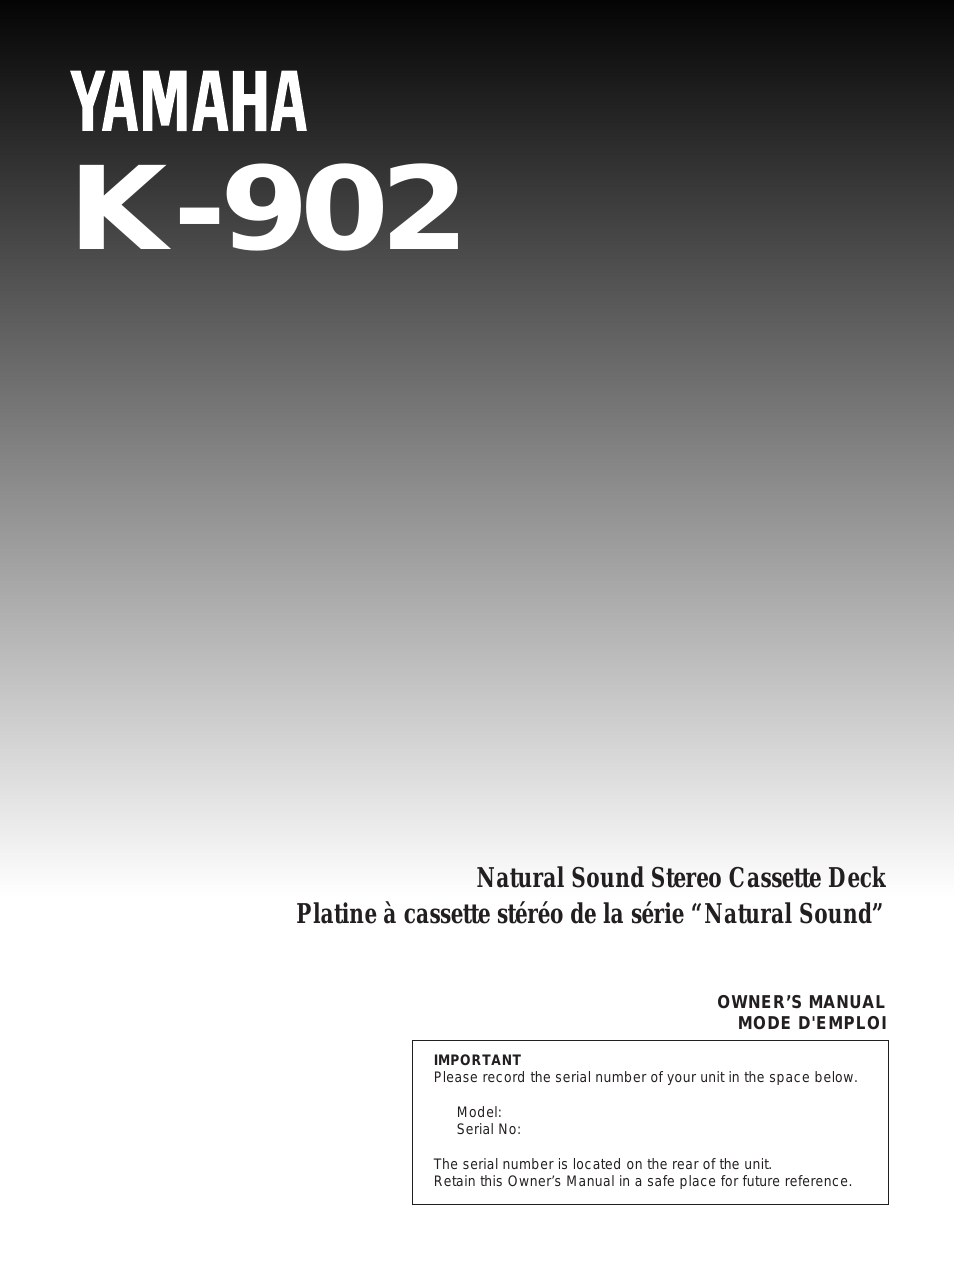 K-902